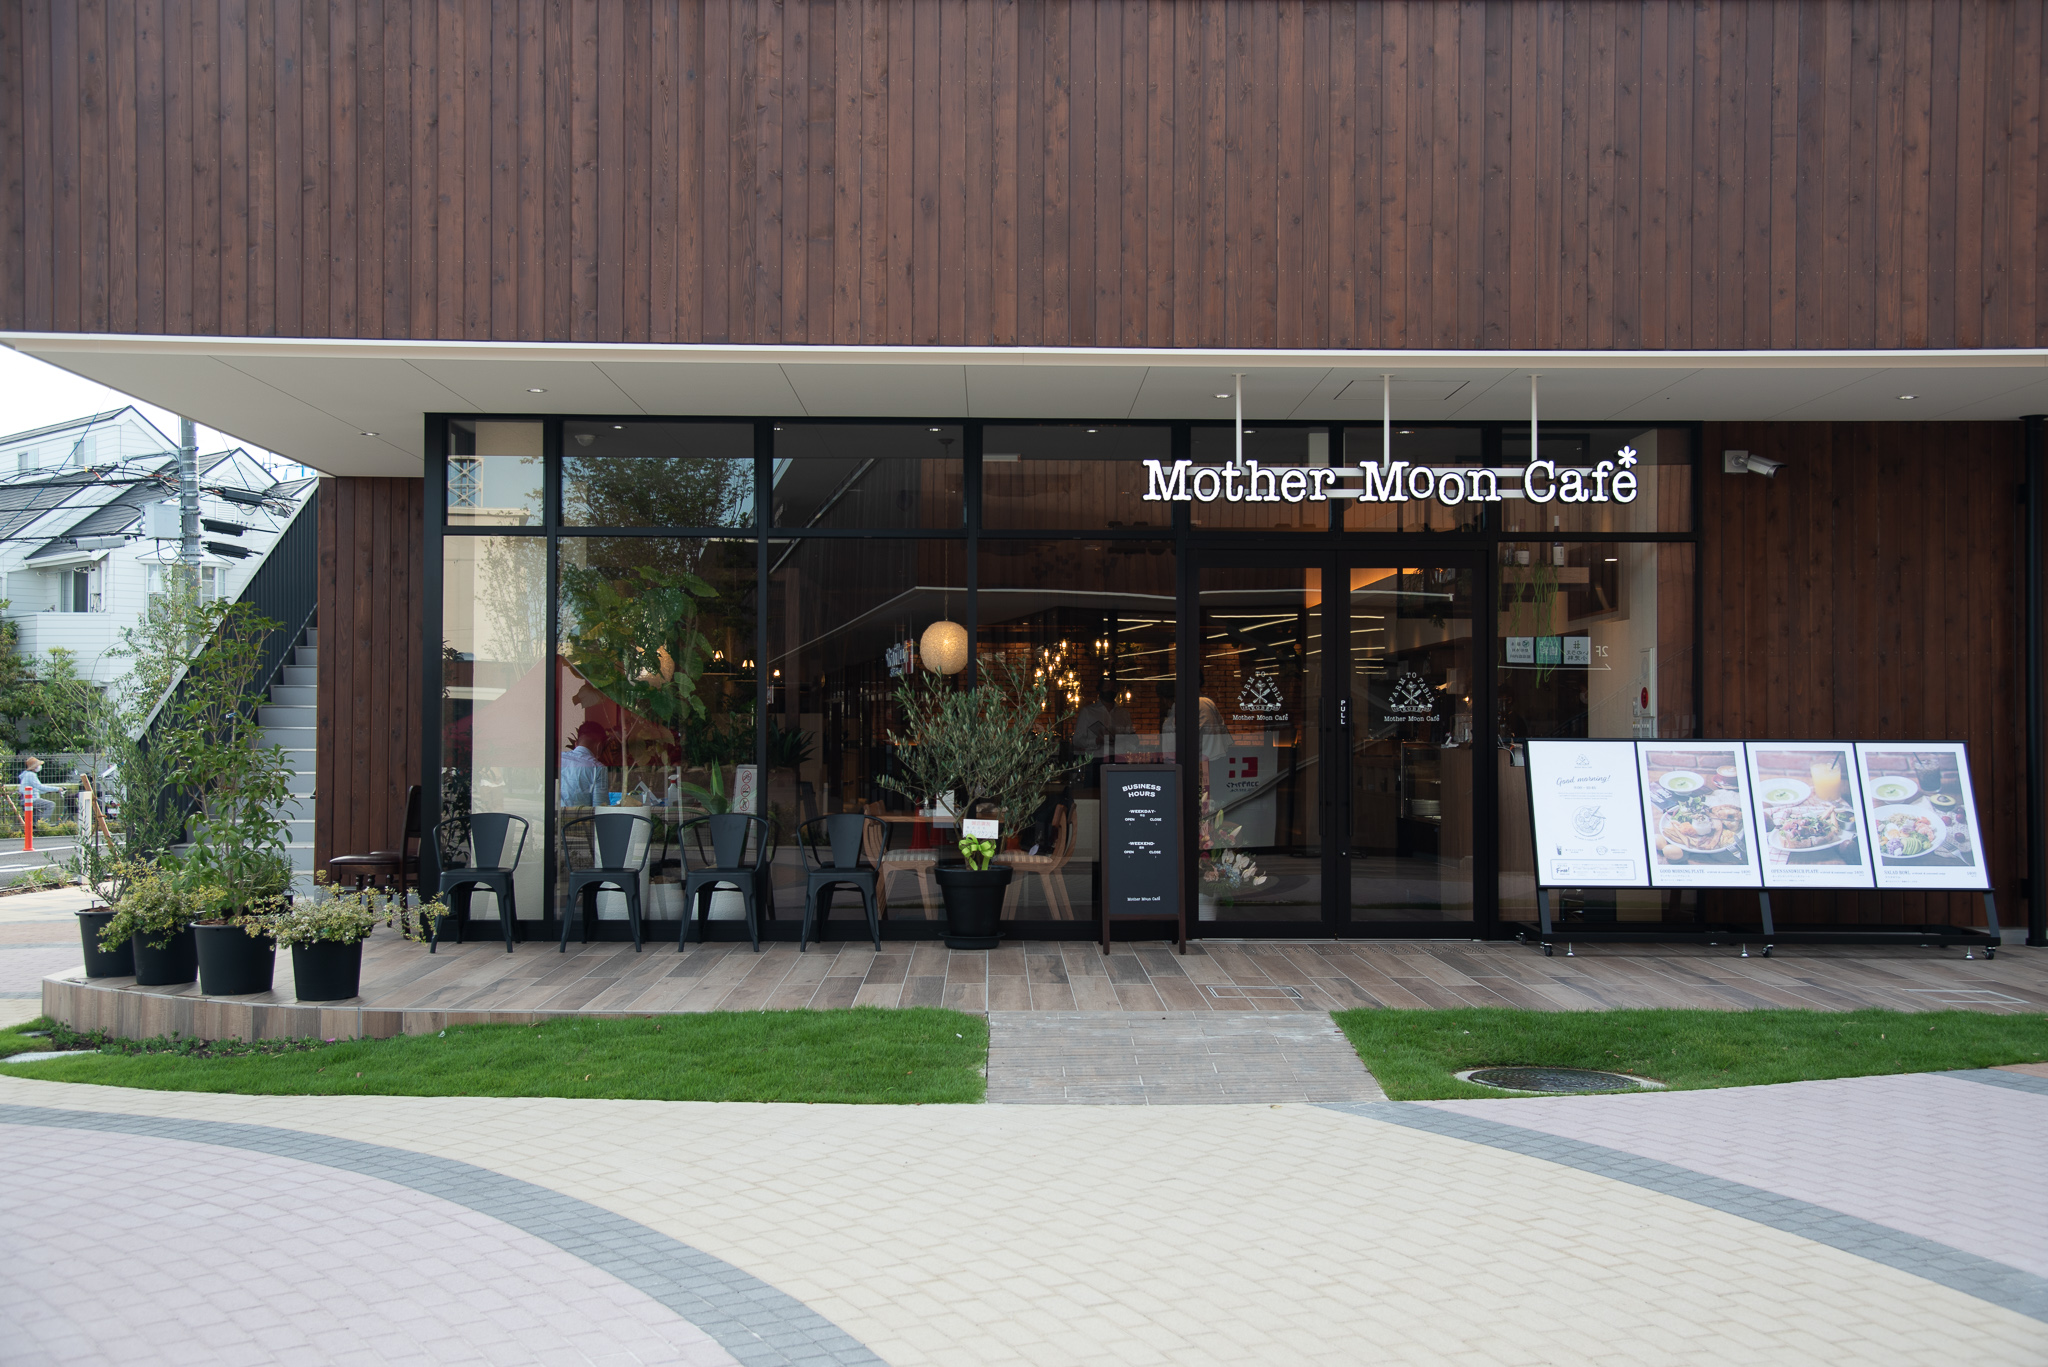 MotherMoonCafe西宮店9月3日オープン詳細のお知らせ